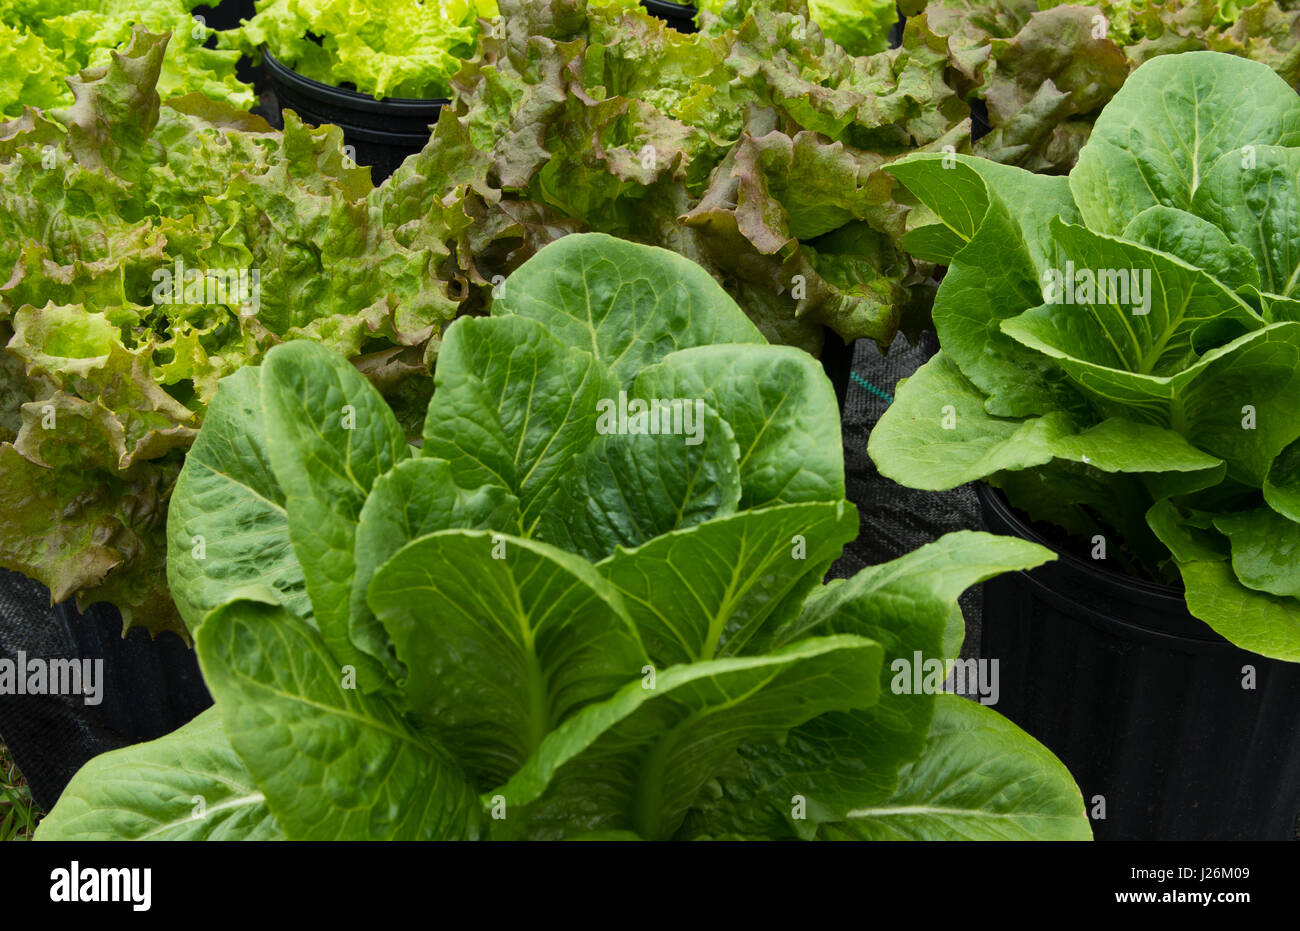 Central Florida home organico giardino con piante di lattuga e verdure in cortile per una sana dieta e mangiare agriturismo coop Foto Stock